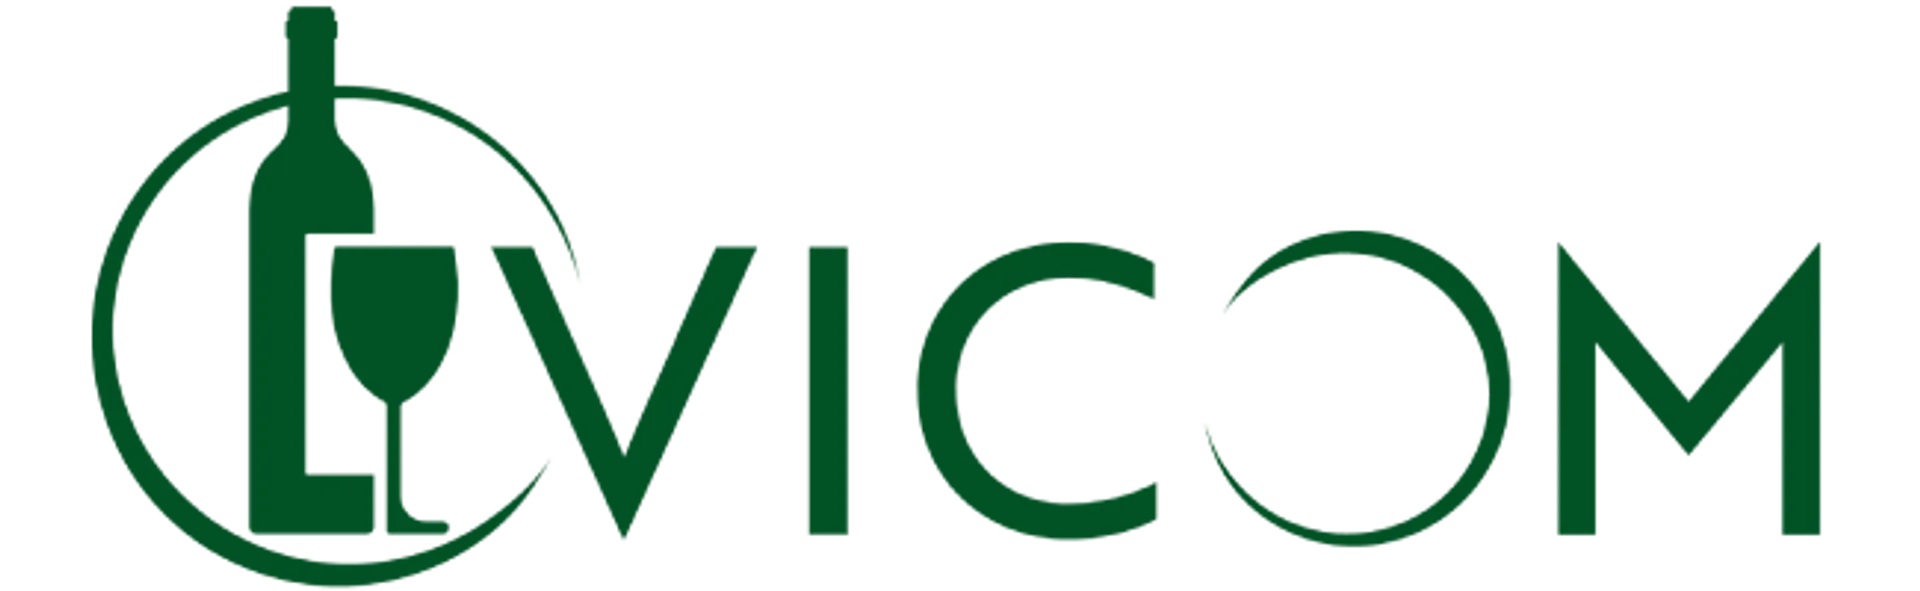 VICOM logo of current flyer